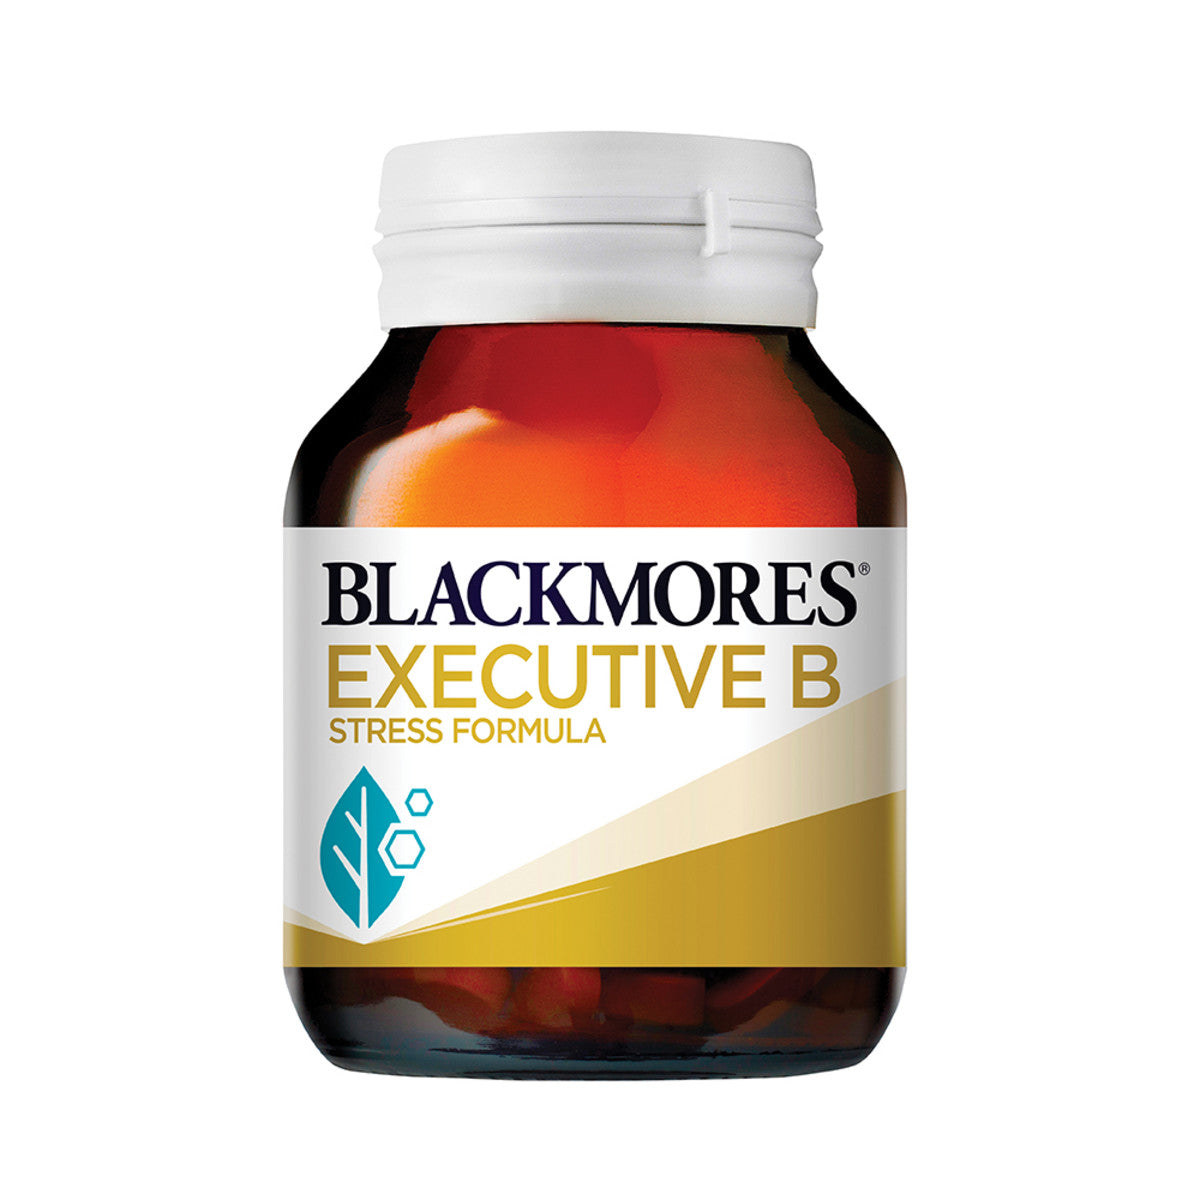 Blackmores - Executive B Stress Formula